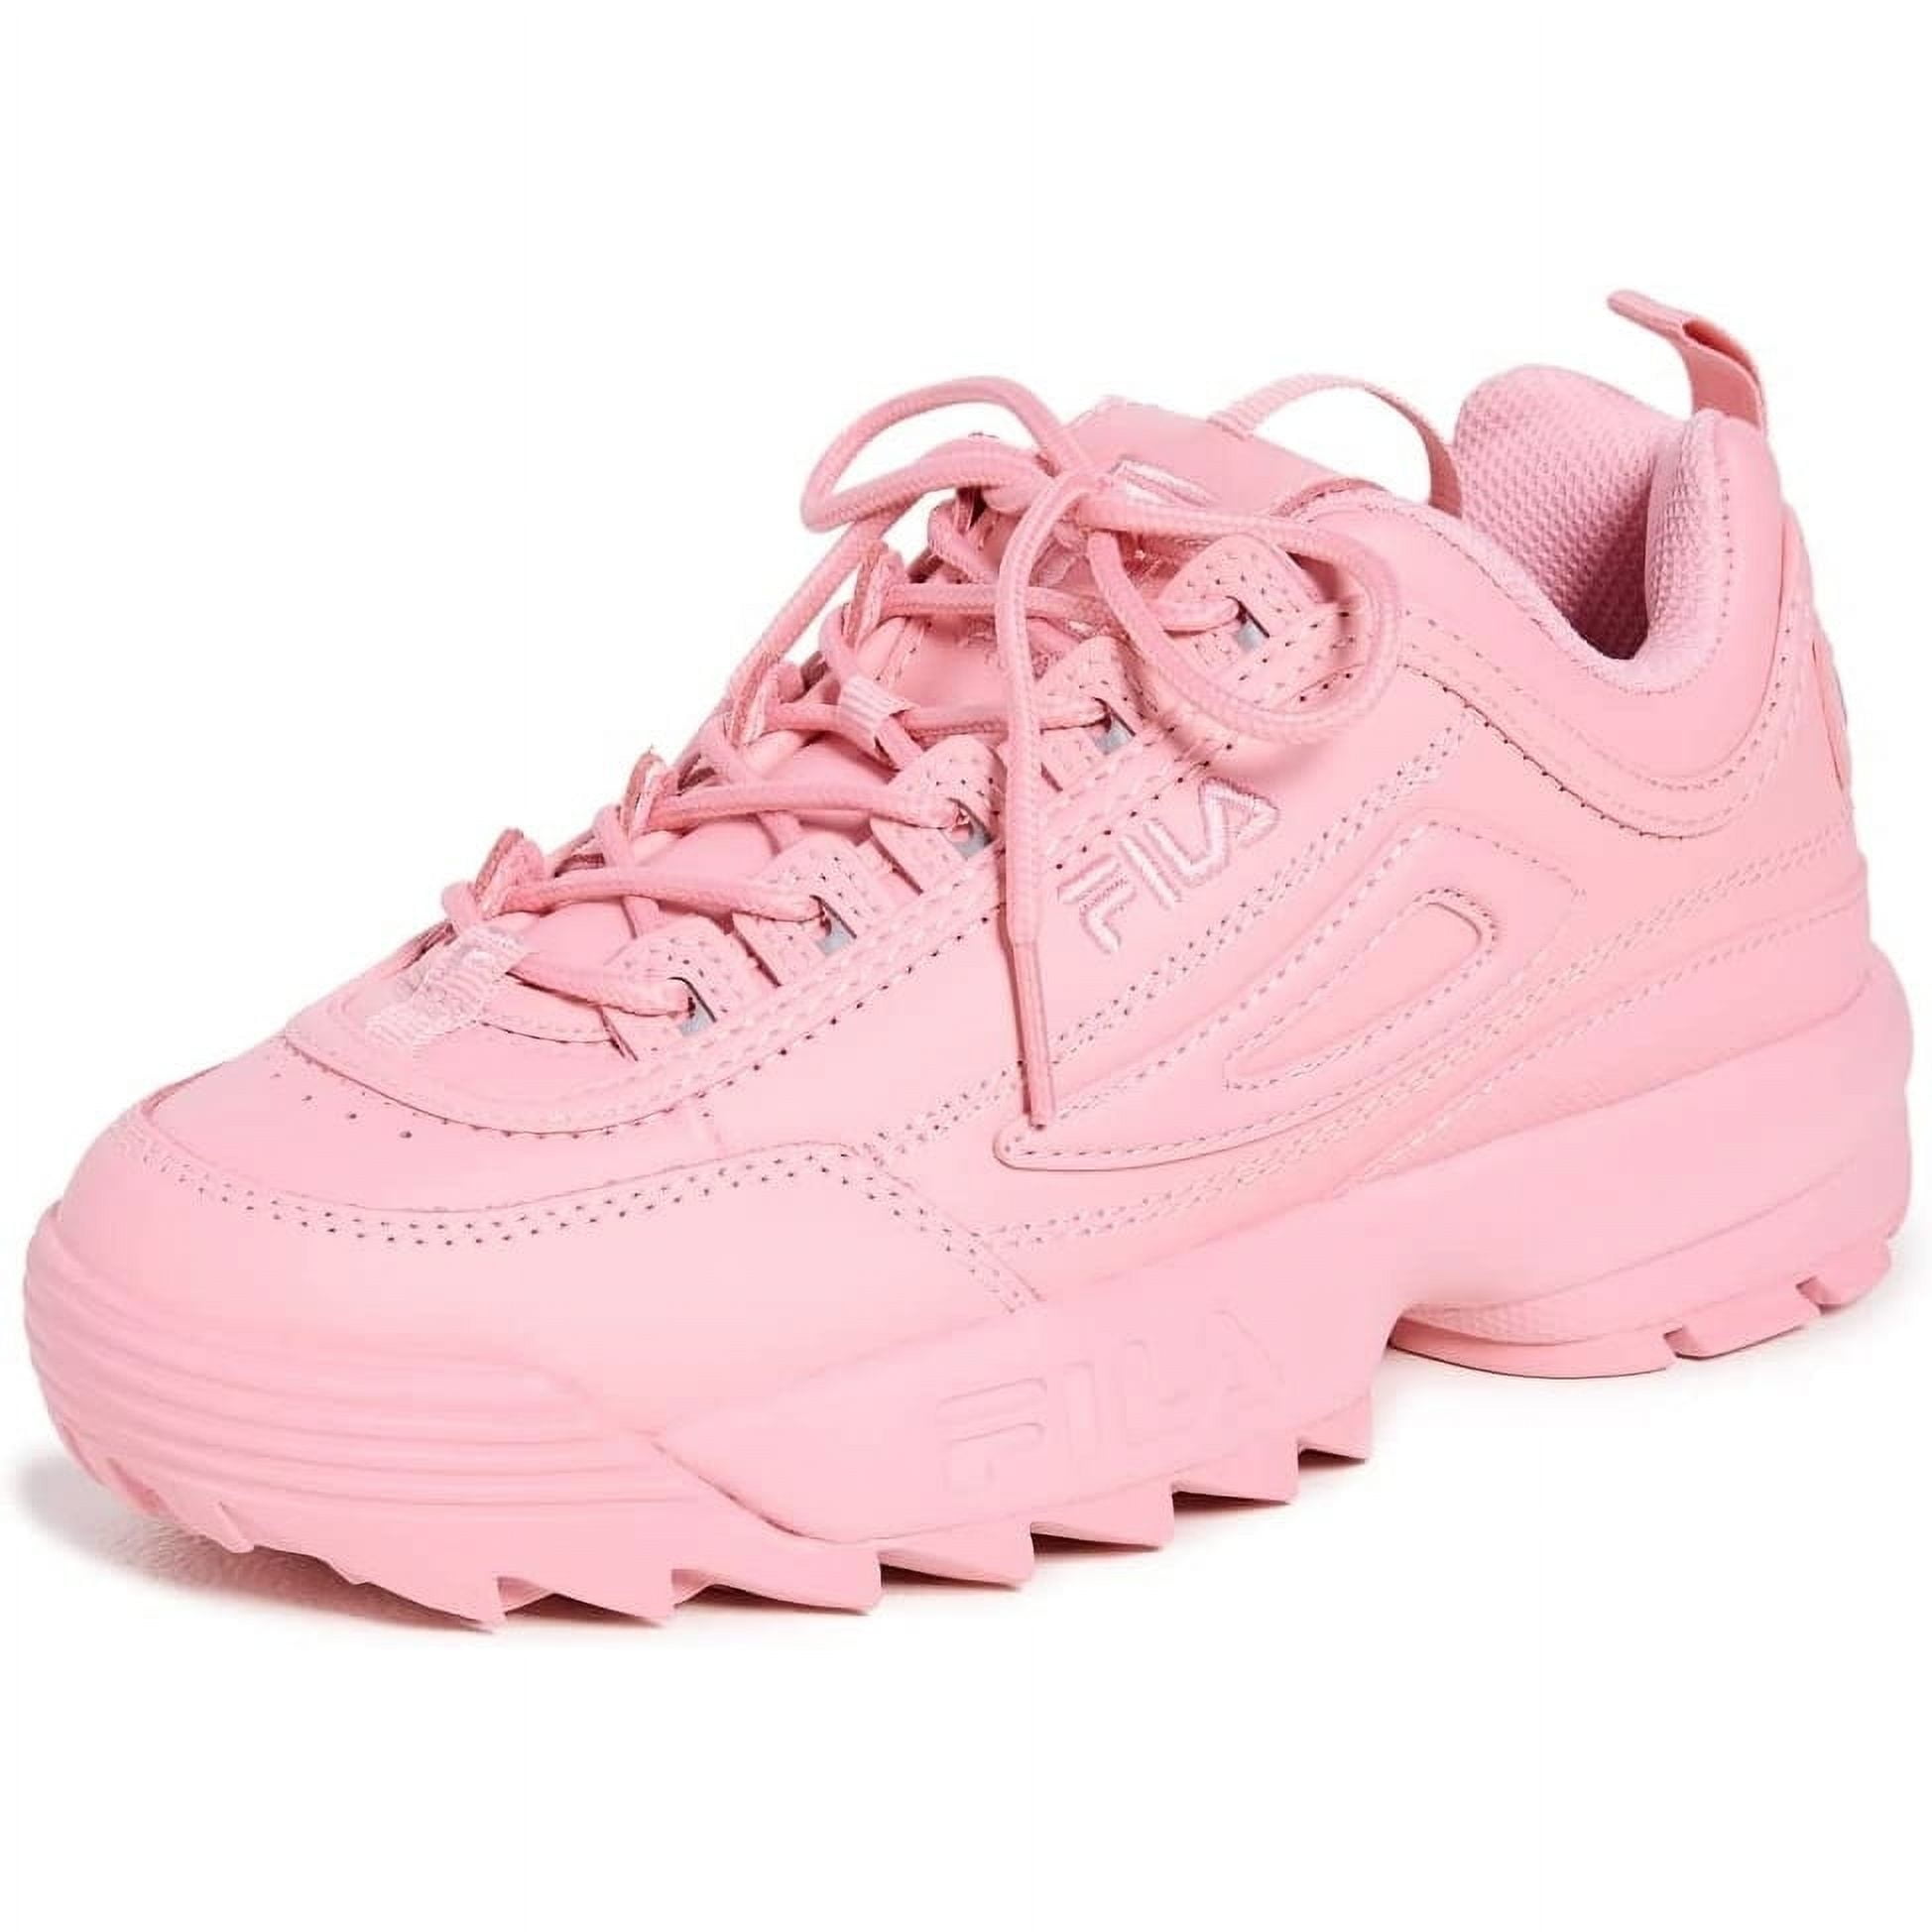 Fila Women's Disruptor II Sneaker Size 6.5 Fiery Coral/fiery Coral/fiery Coral